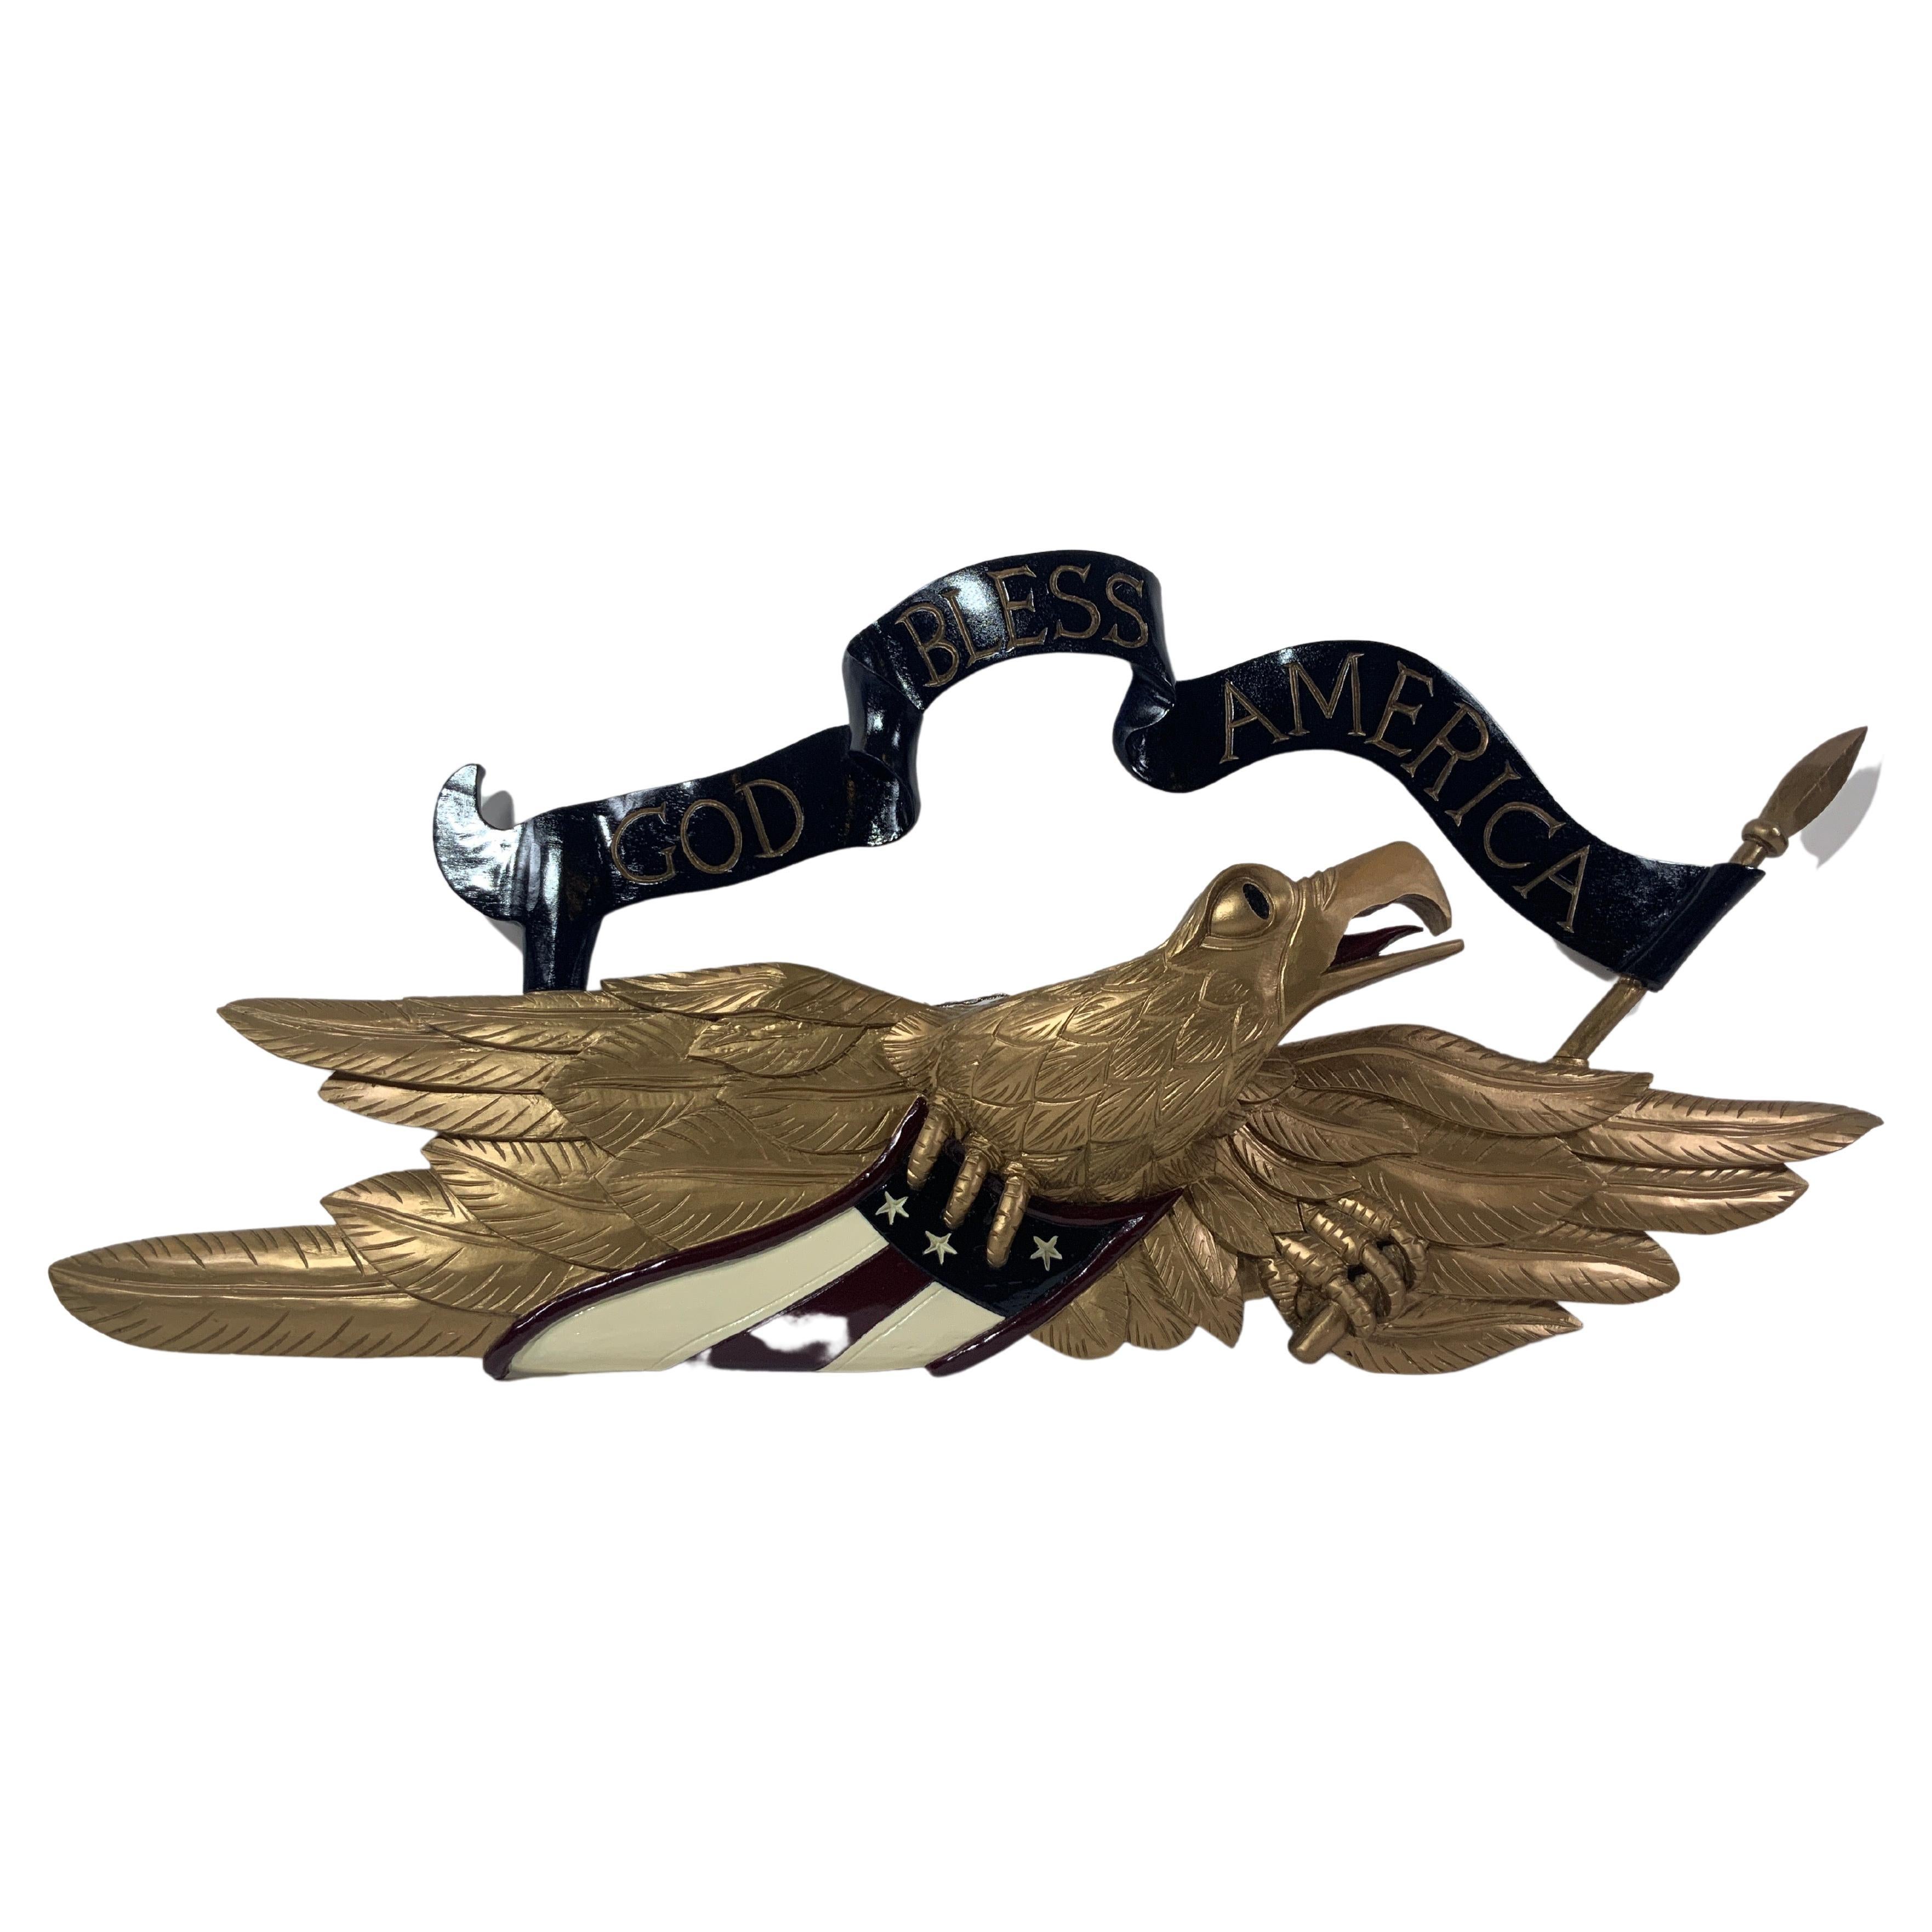 Old Gold geschnitzter Adler, "" Gott unsterblich Amerika"